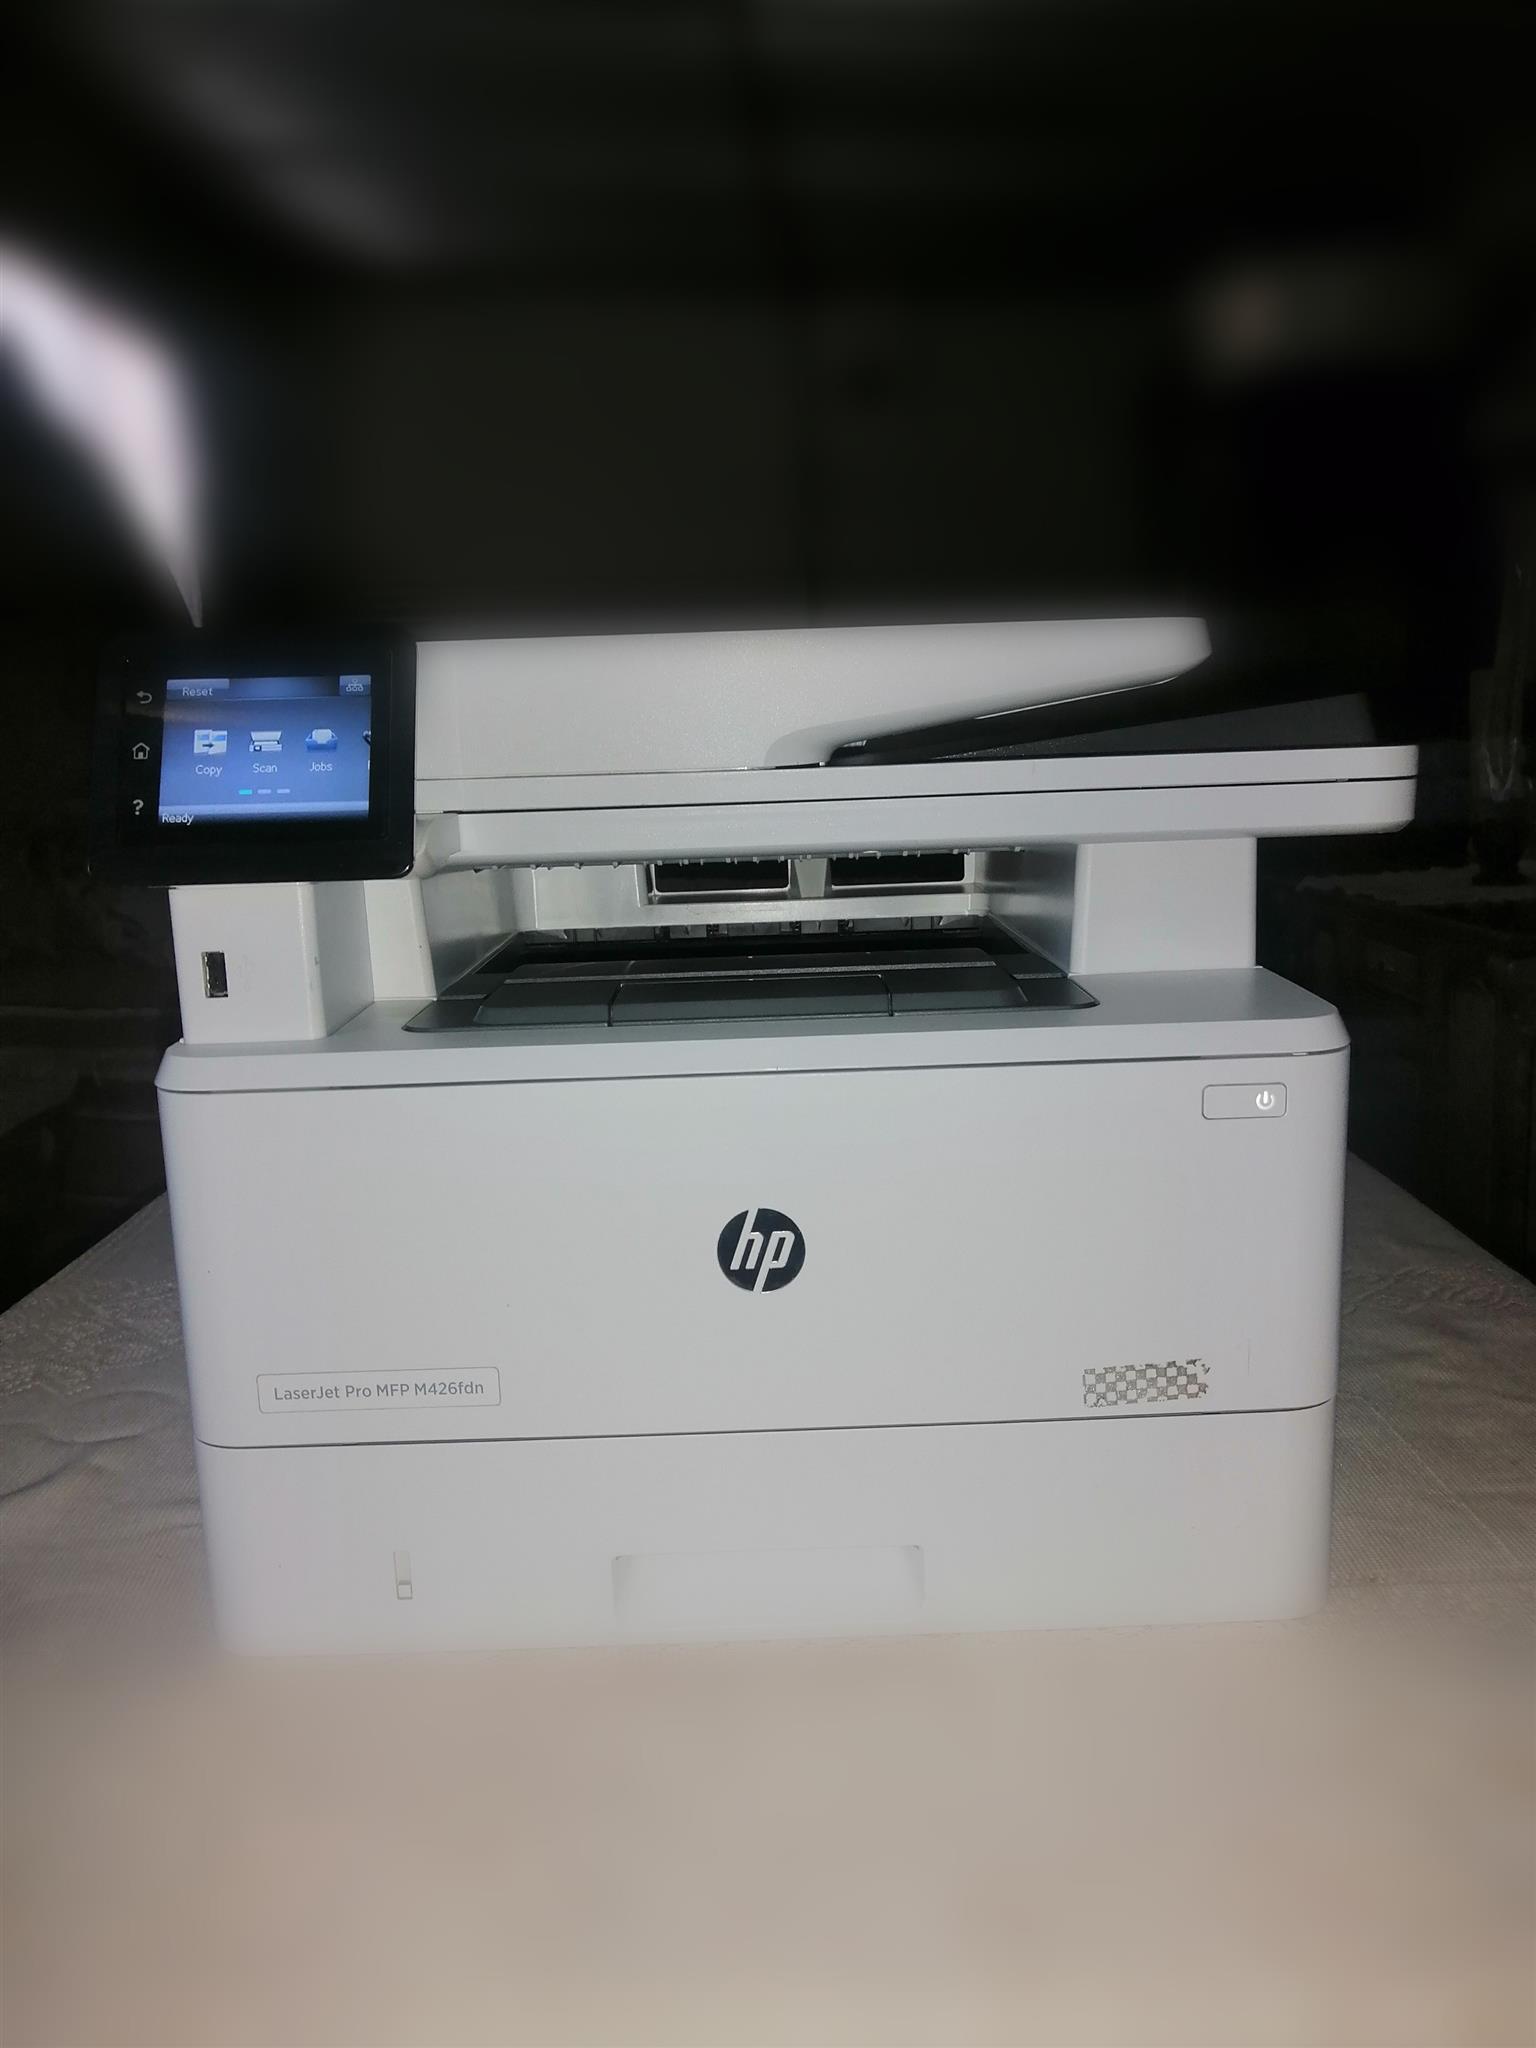 LaserJet Pro MFP M426fdn Printer All-in-One 